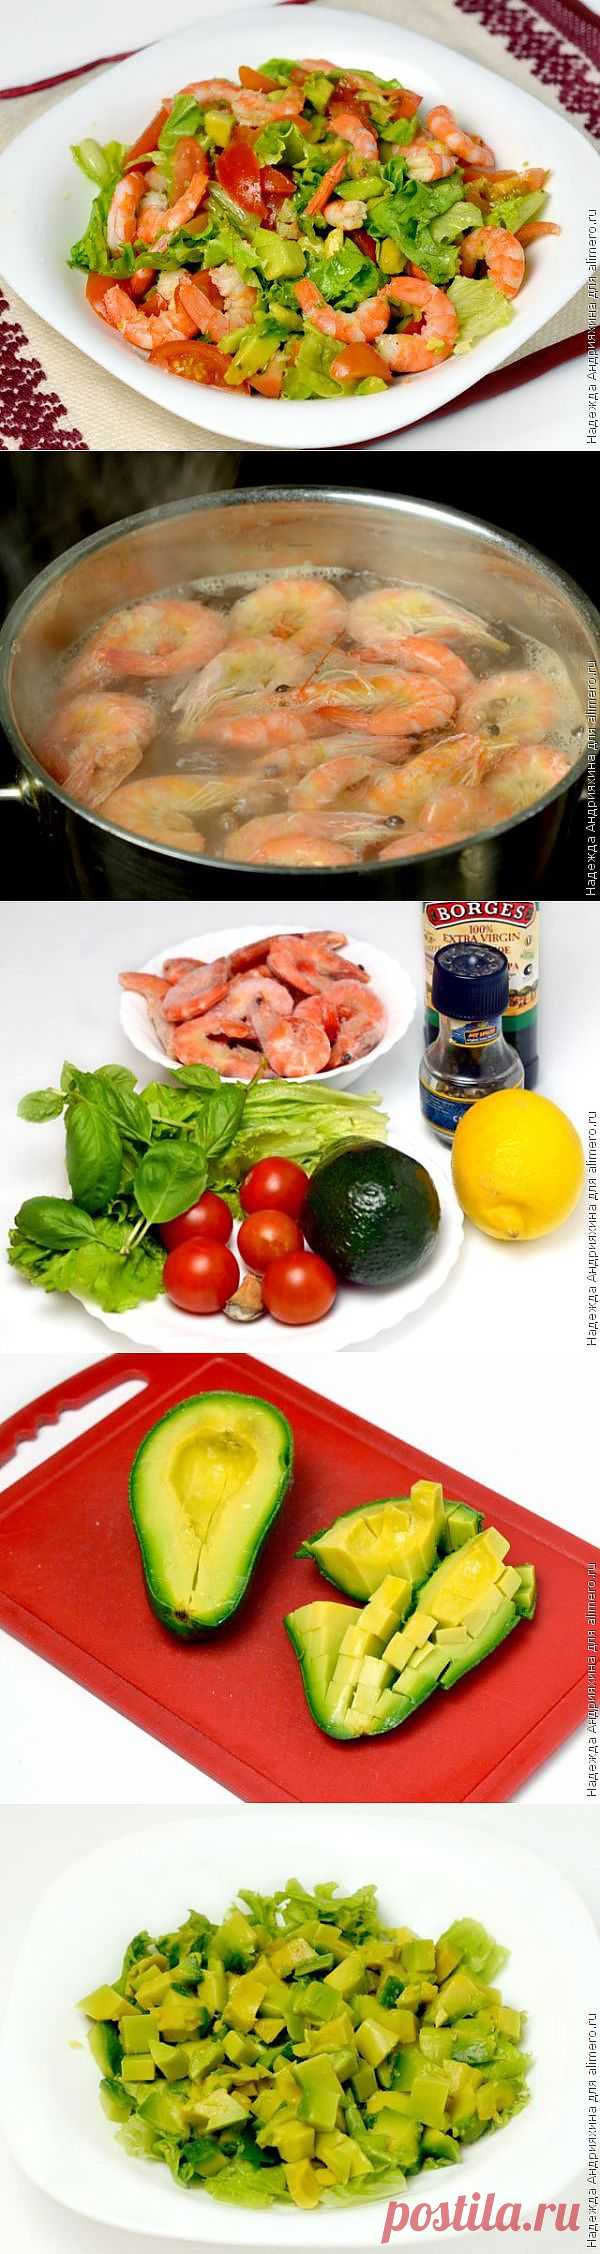 Салат с авокадо и креветками / Рецепты с фото